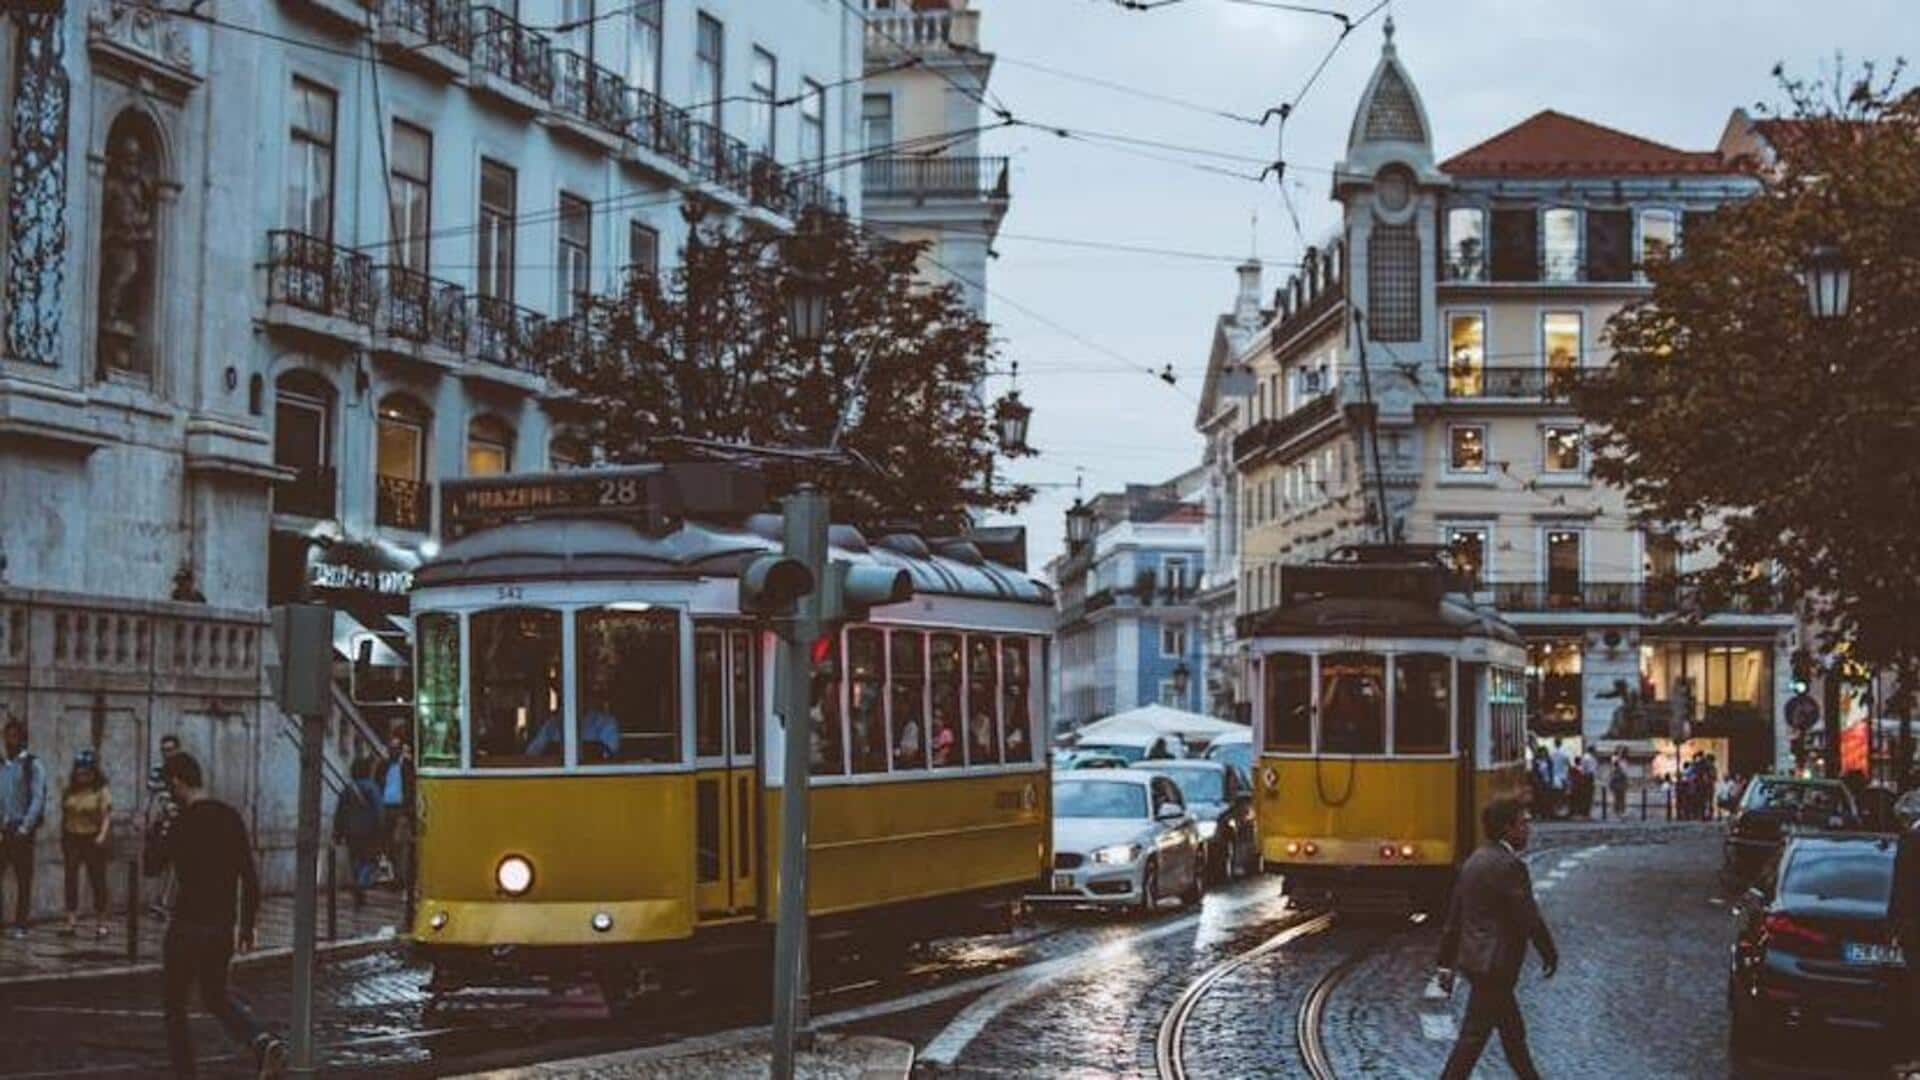 Perjalanan trem dan fado bersejarah Lisbon 